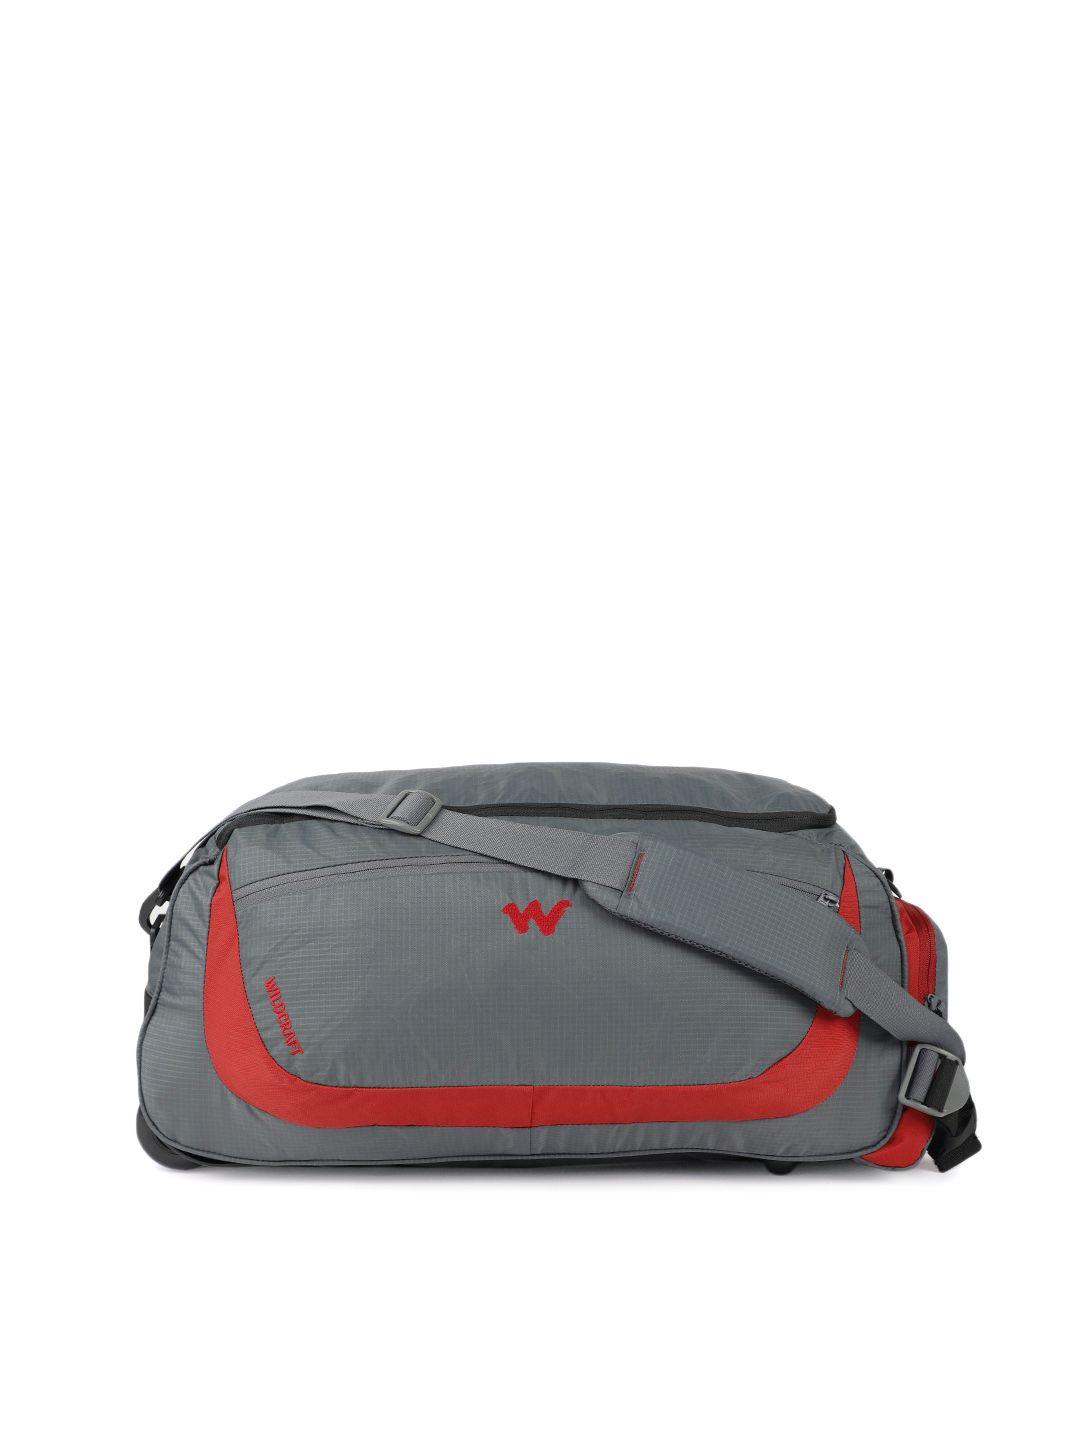 wildcraft unisex red & grey rover trolley duffel bag